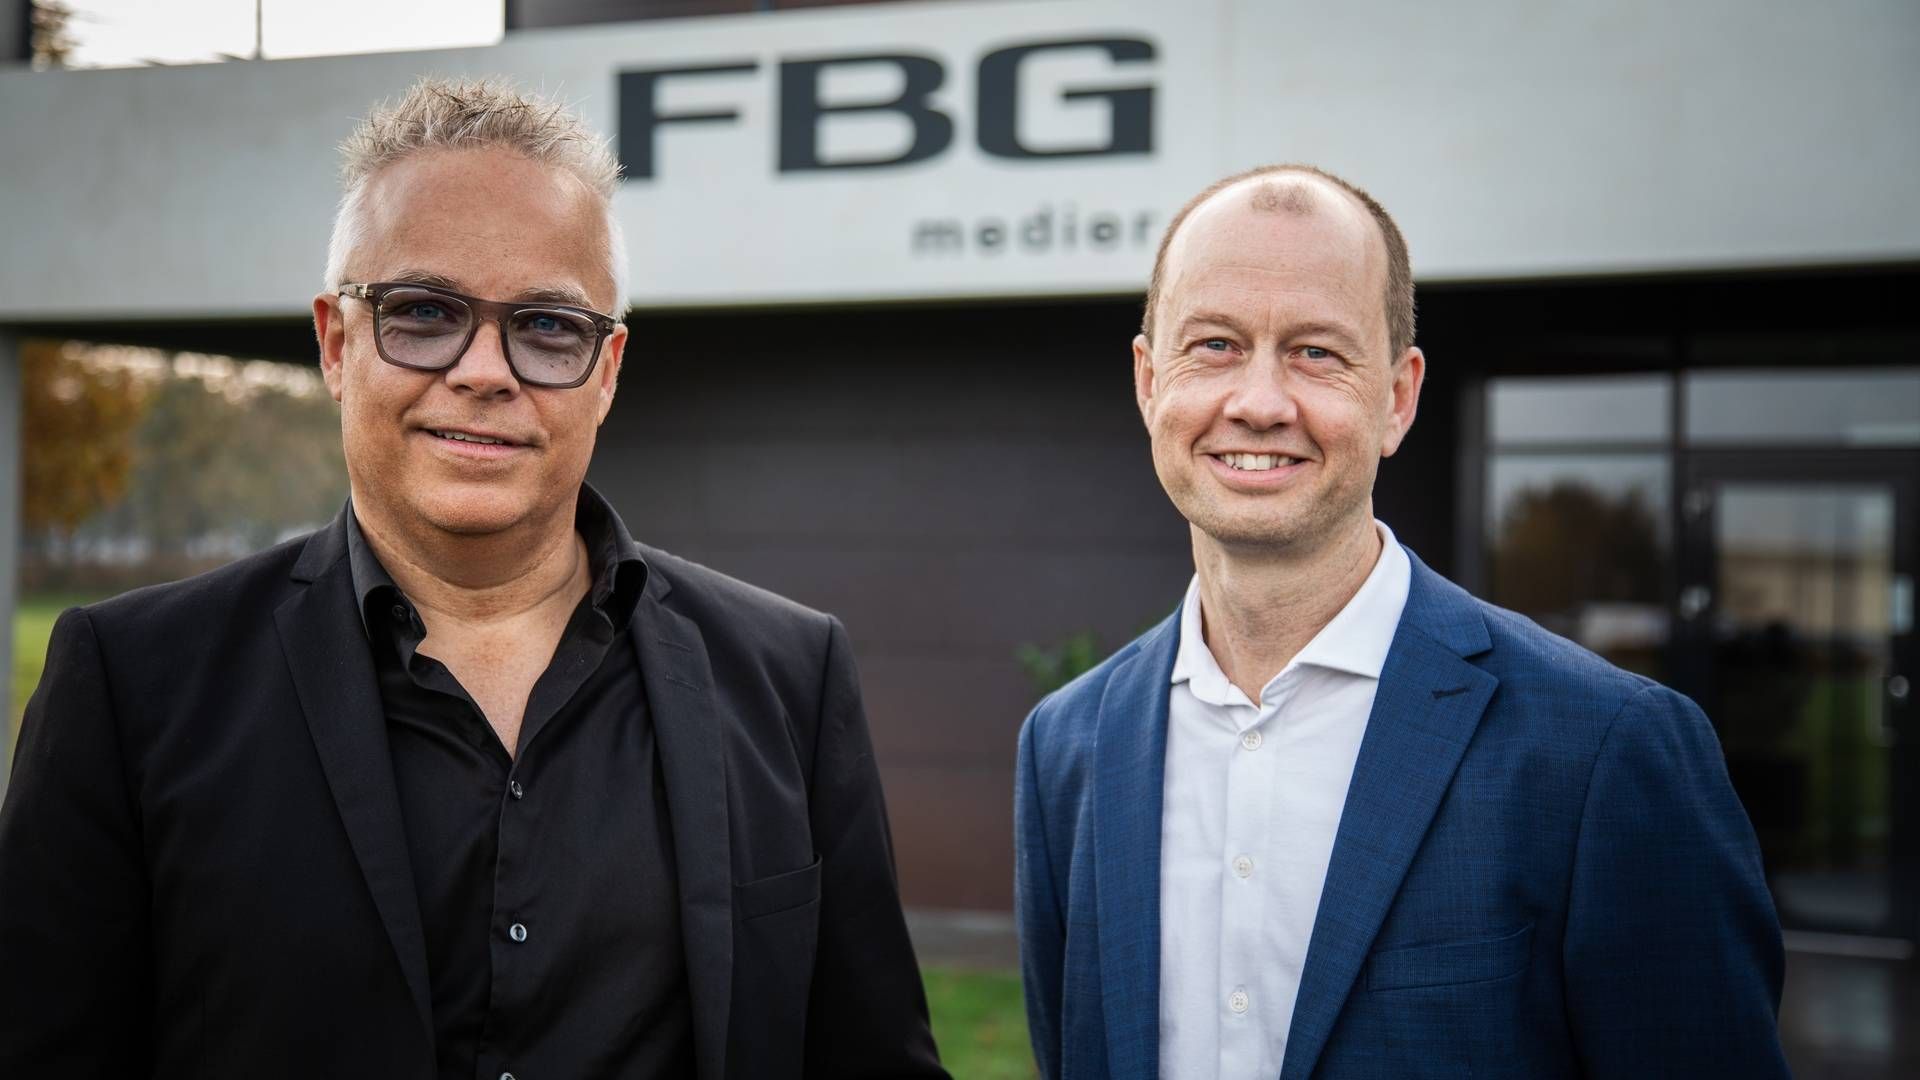 Jørgen Lindhard (tv) overlader direktørstolen til Asger Andersen. | Foto: PR/FBG Medier